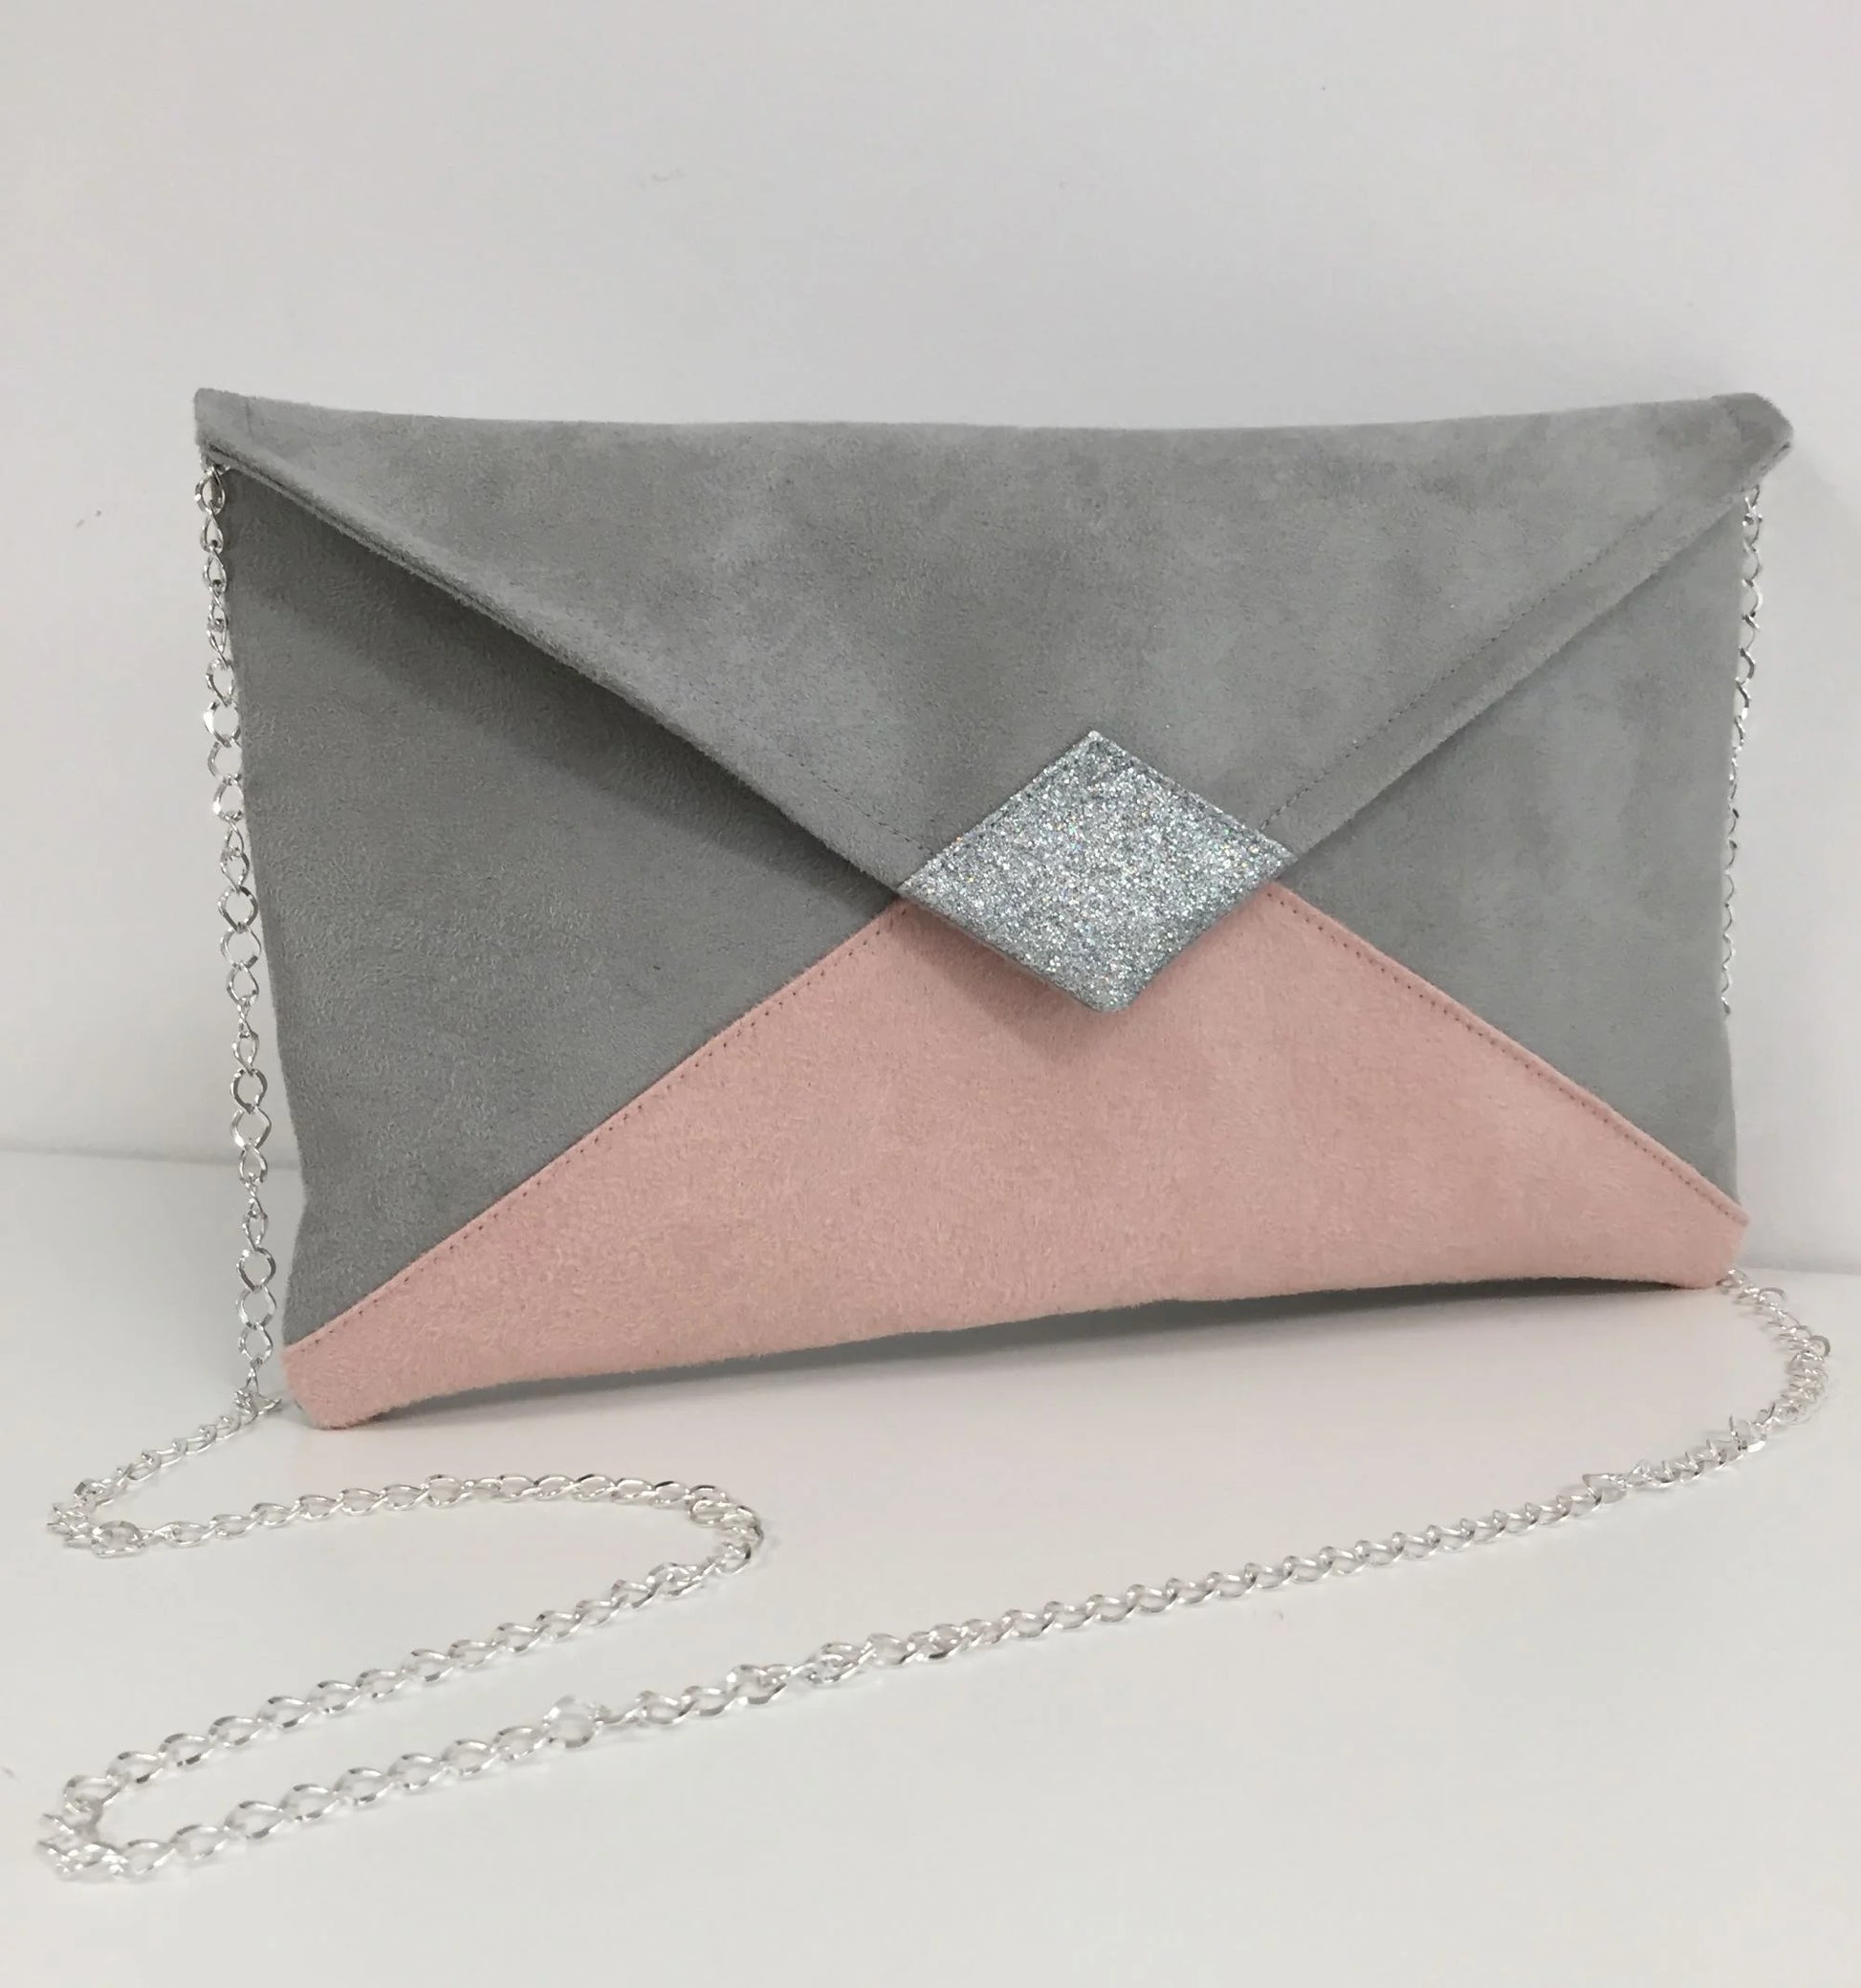 Face avant du sac pochette Isa gris clair et rose poudré à paillettes argentées, avec sa chainette amovible.